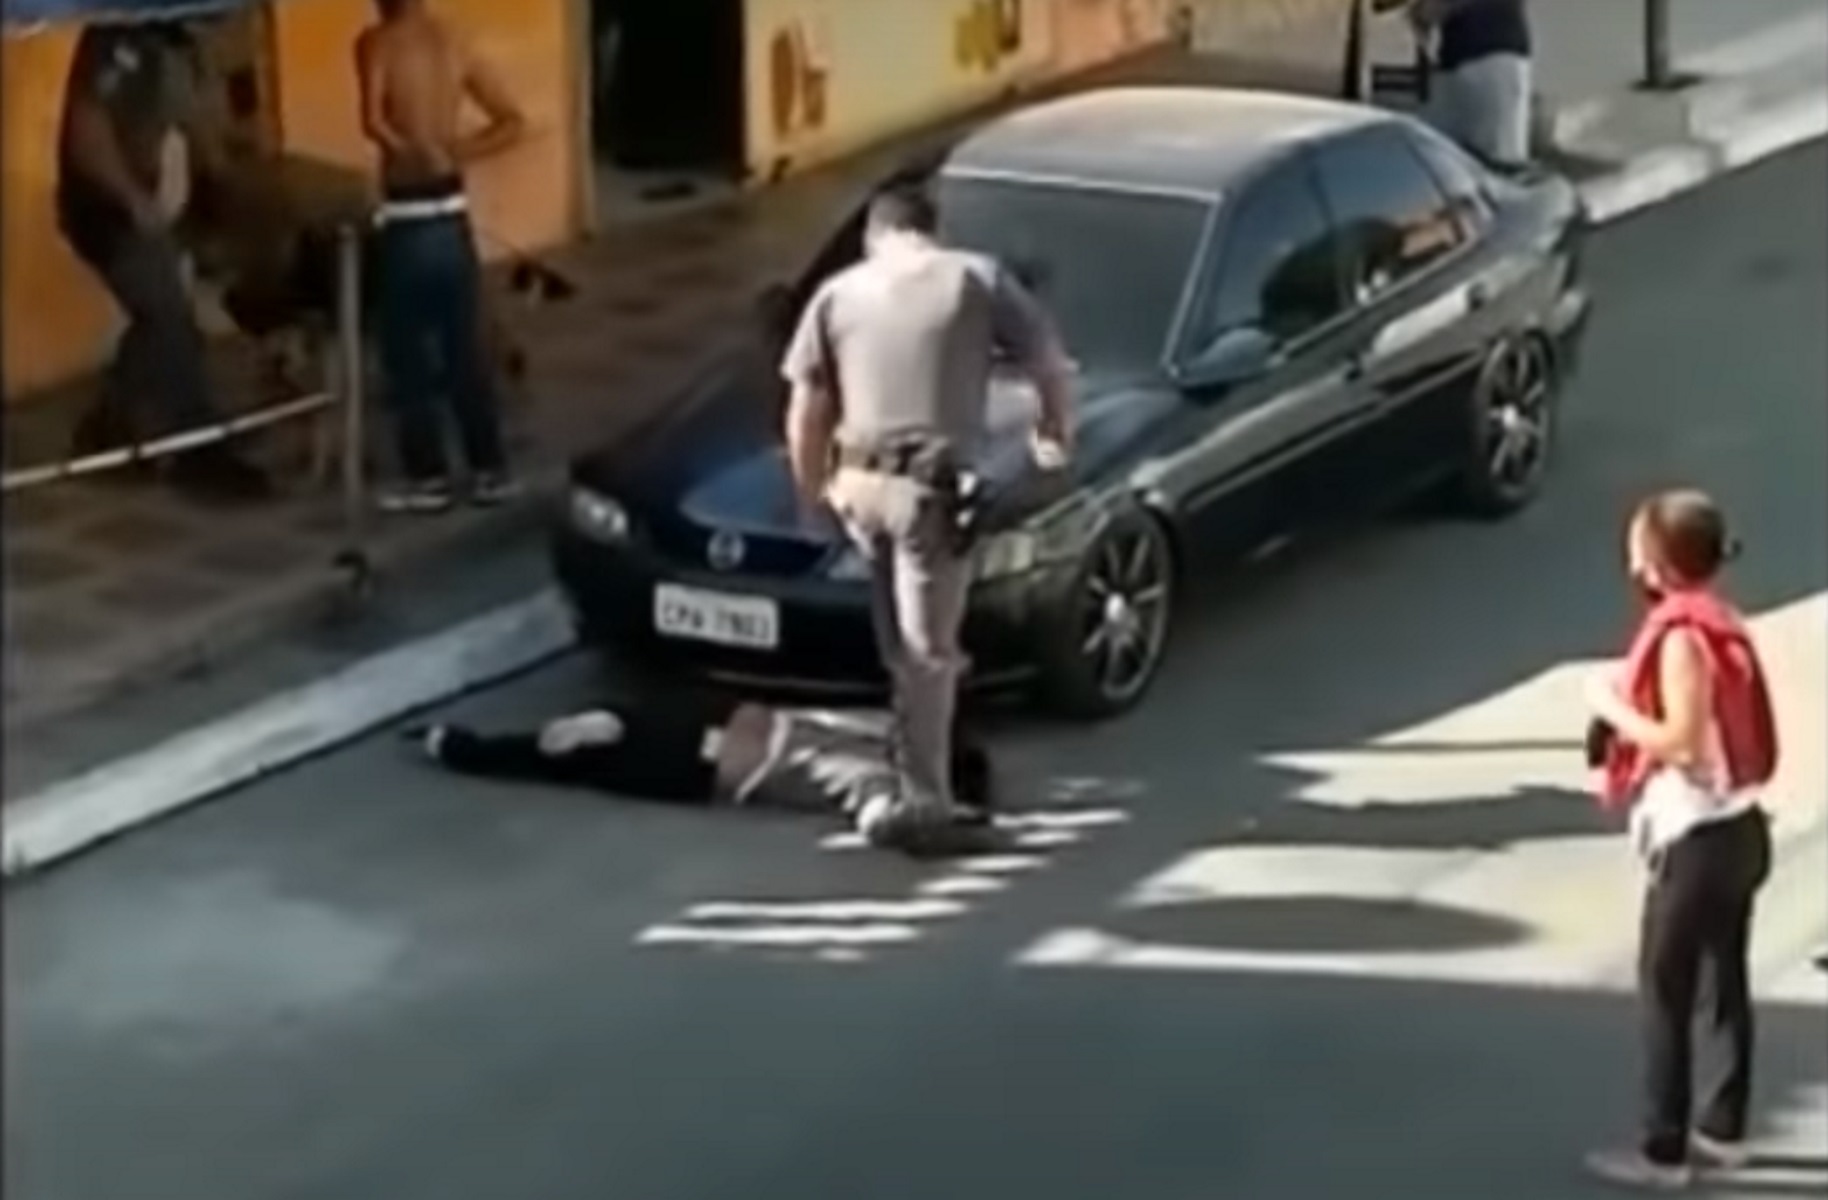 Βίντεο σοκ στη Βραζιλία: Αστυνομικός κακοποιεί γυναίκα – Την πατάει στον λαιμό για να την ακινητοποιήσει